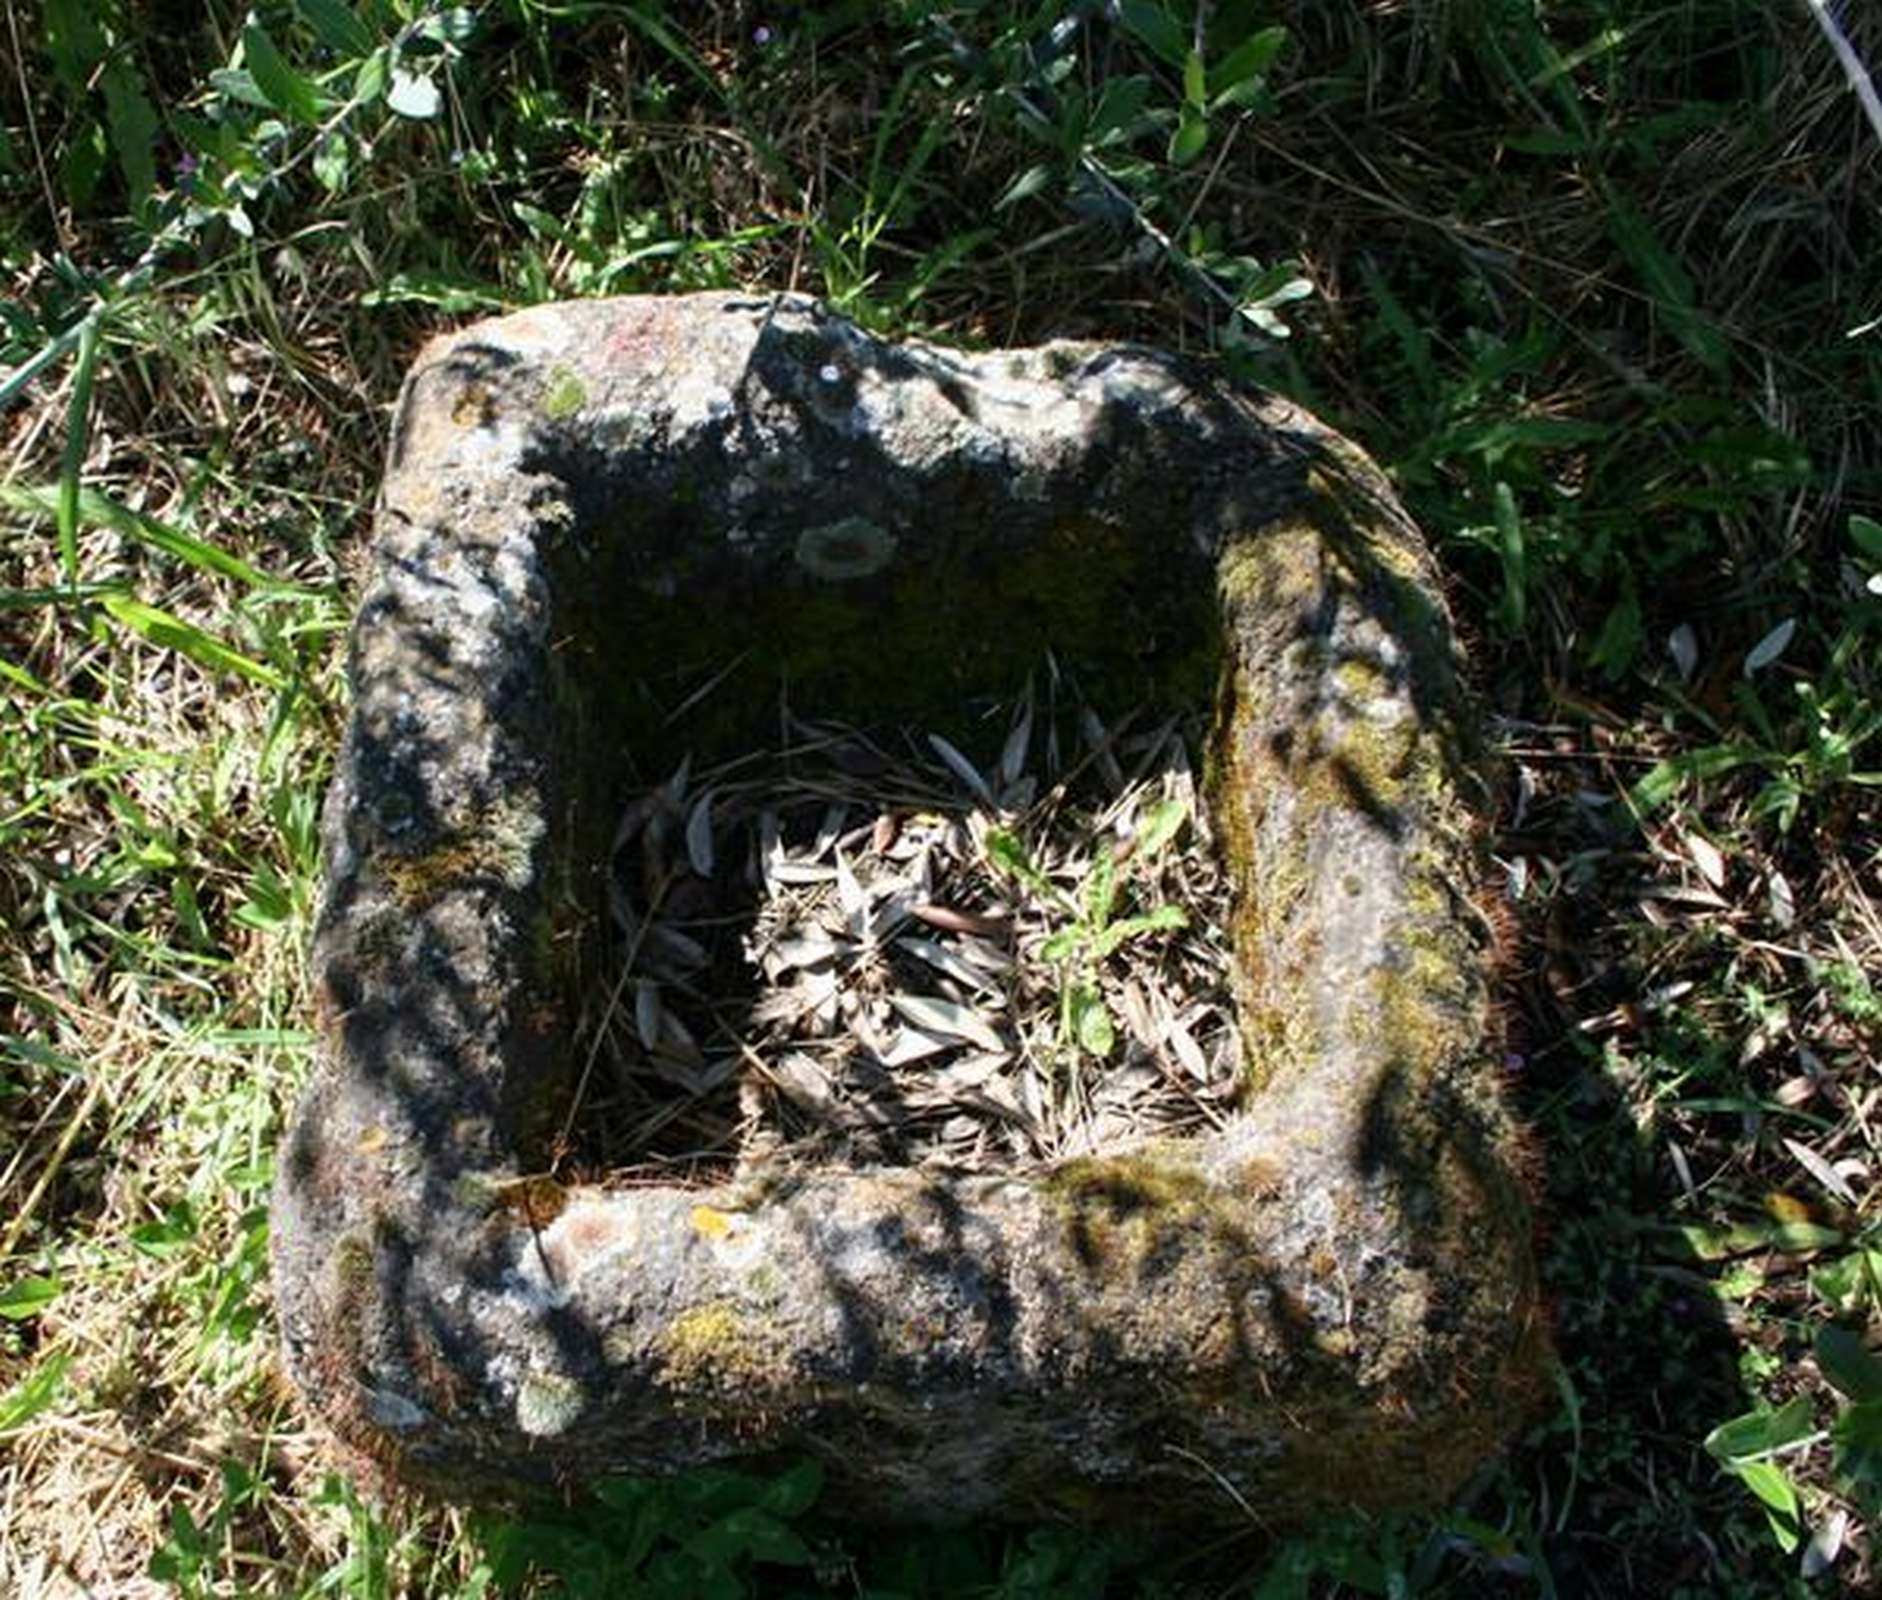 Antica vasca in pietra - Vasche - Arredo Giardino - Prodotti - Antichità Fiorillo